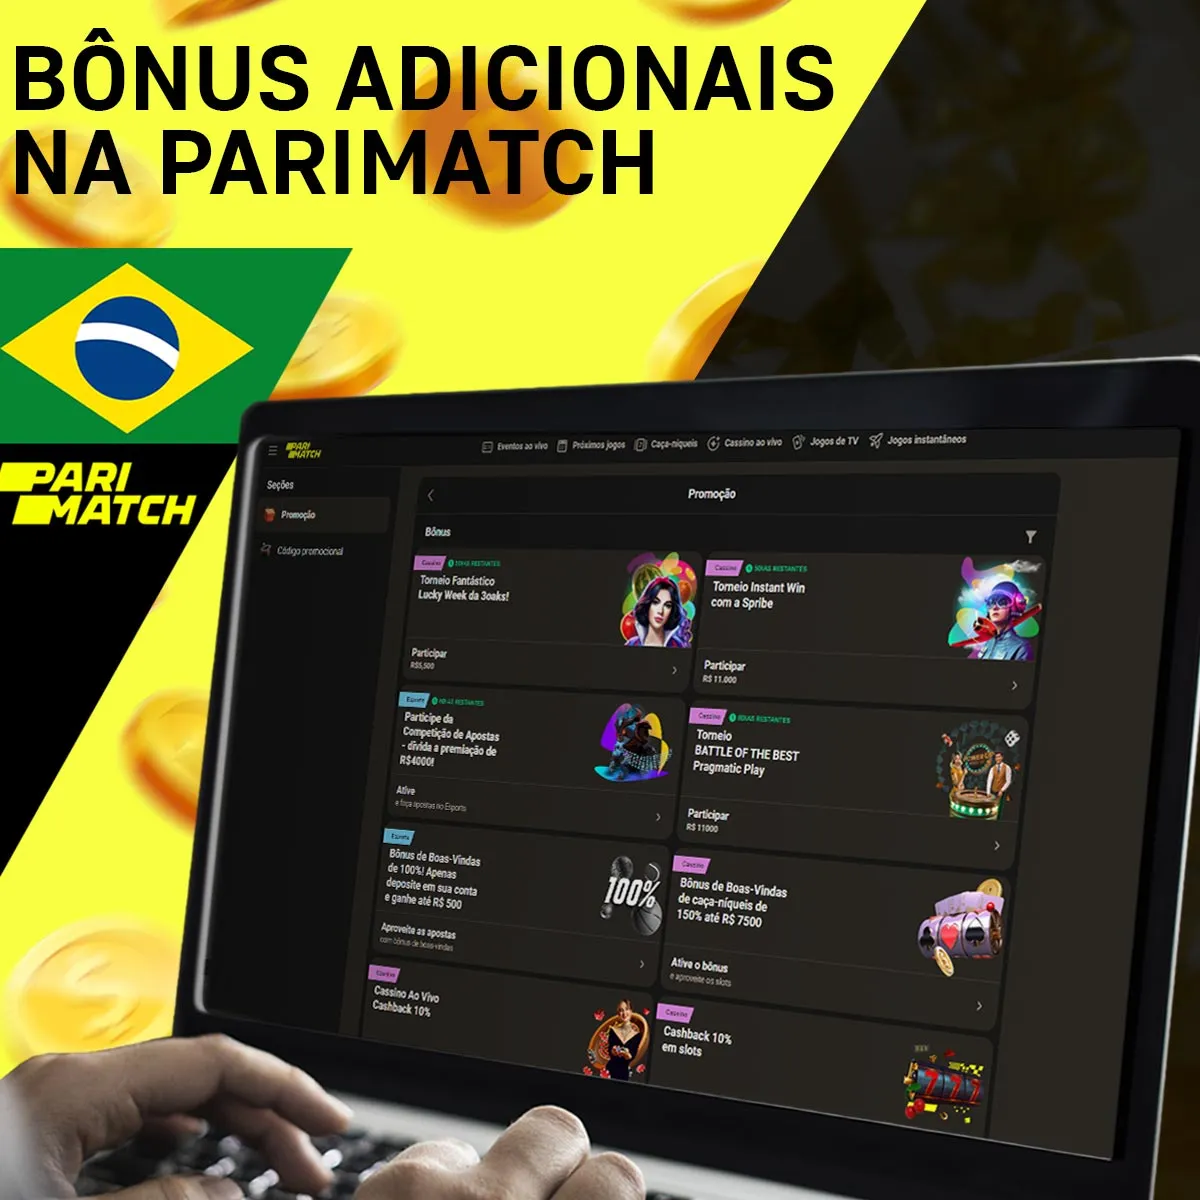 Bônus Adicionais da casa de apostas Parimatch no Brasil